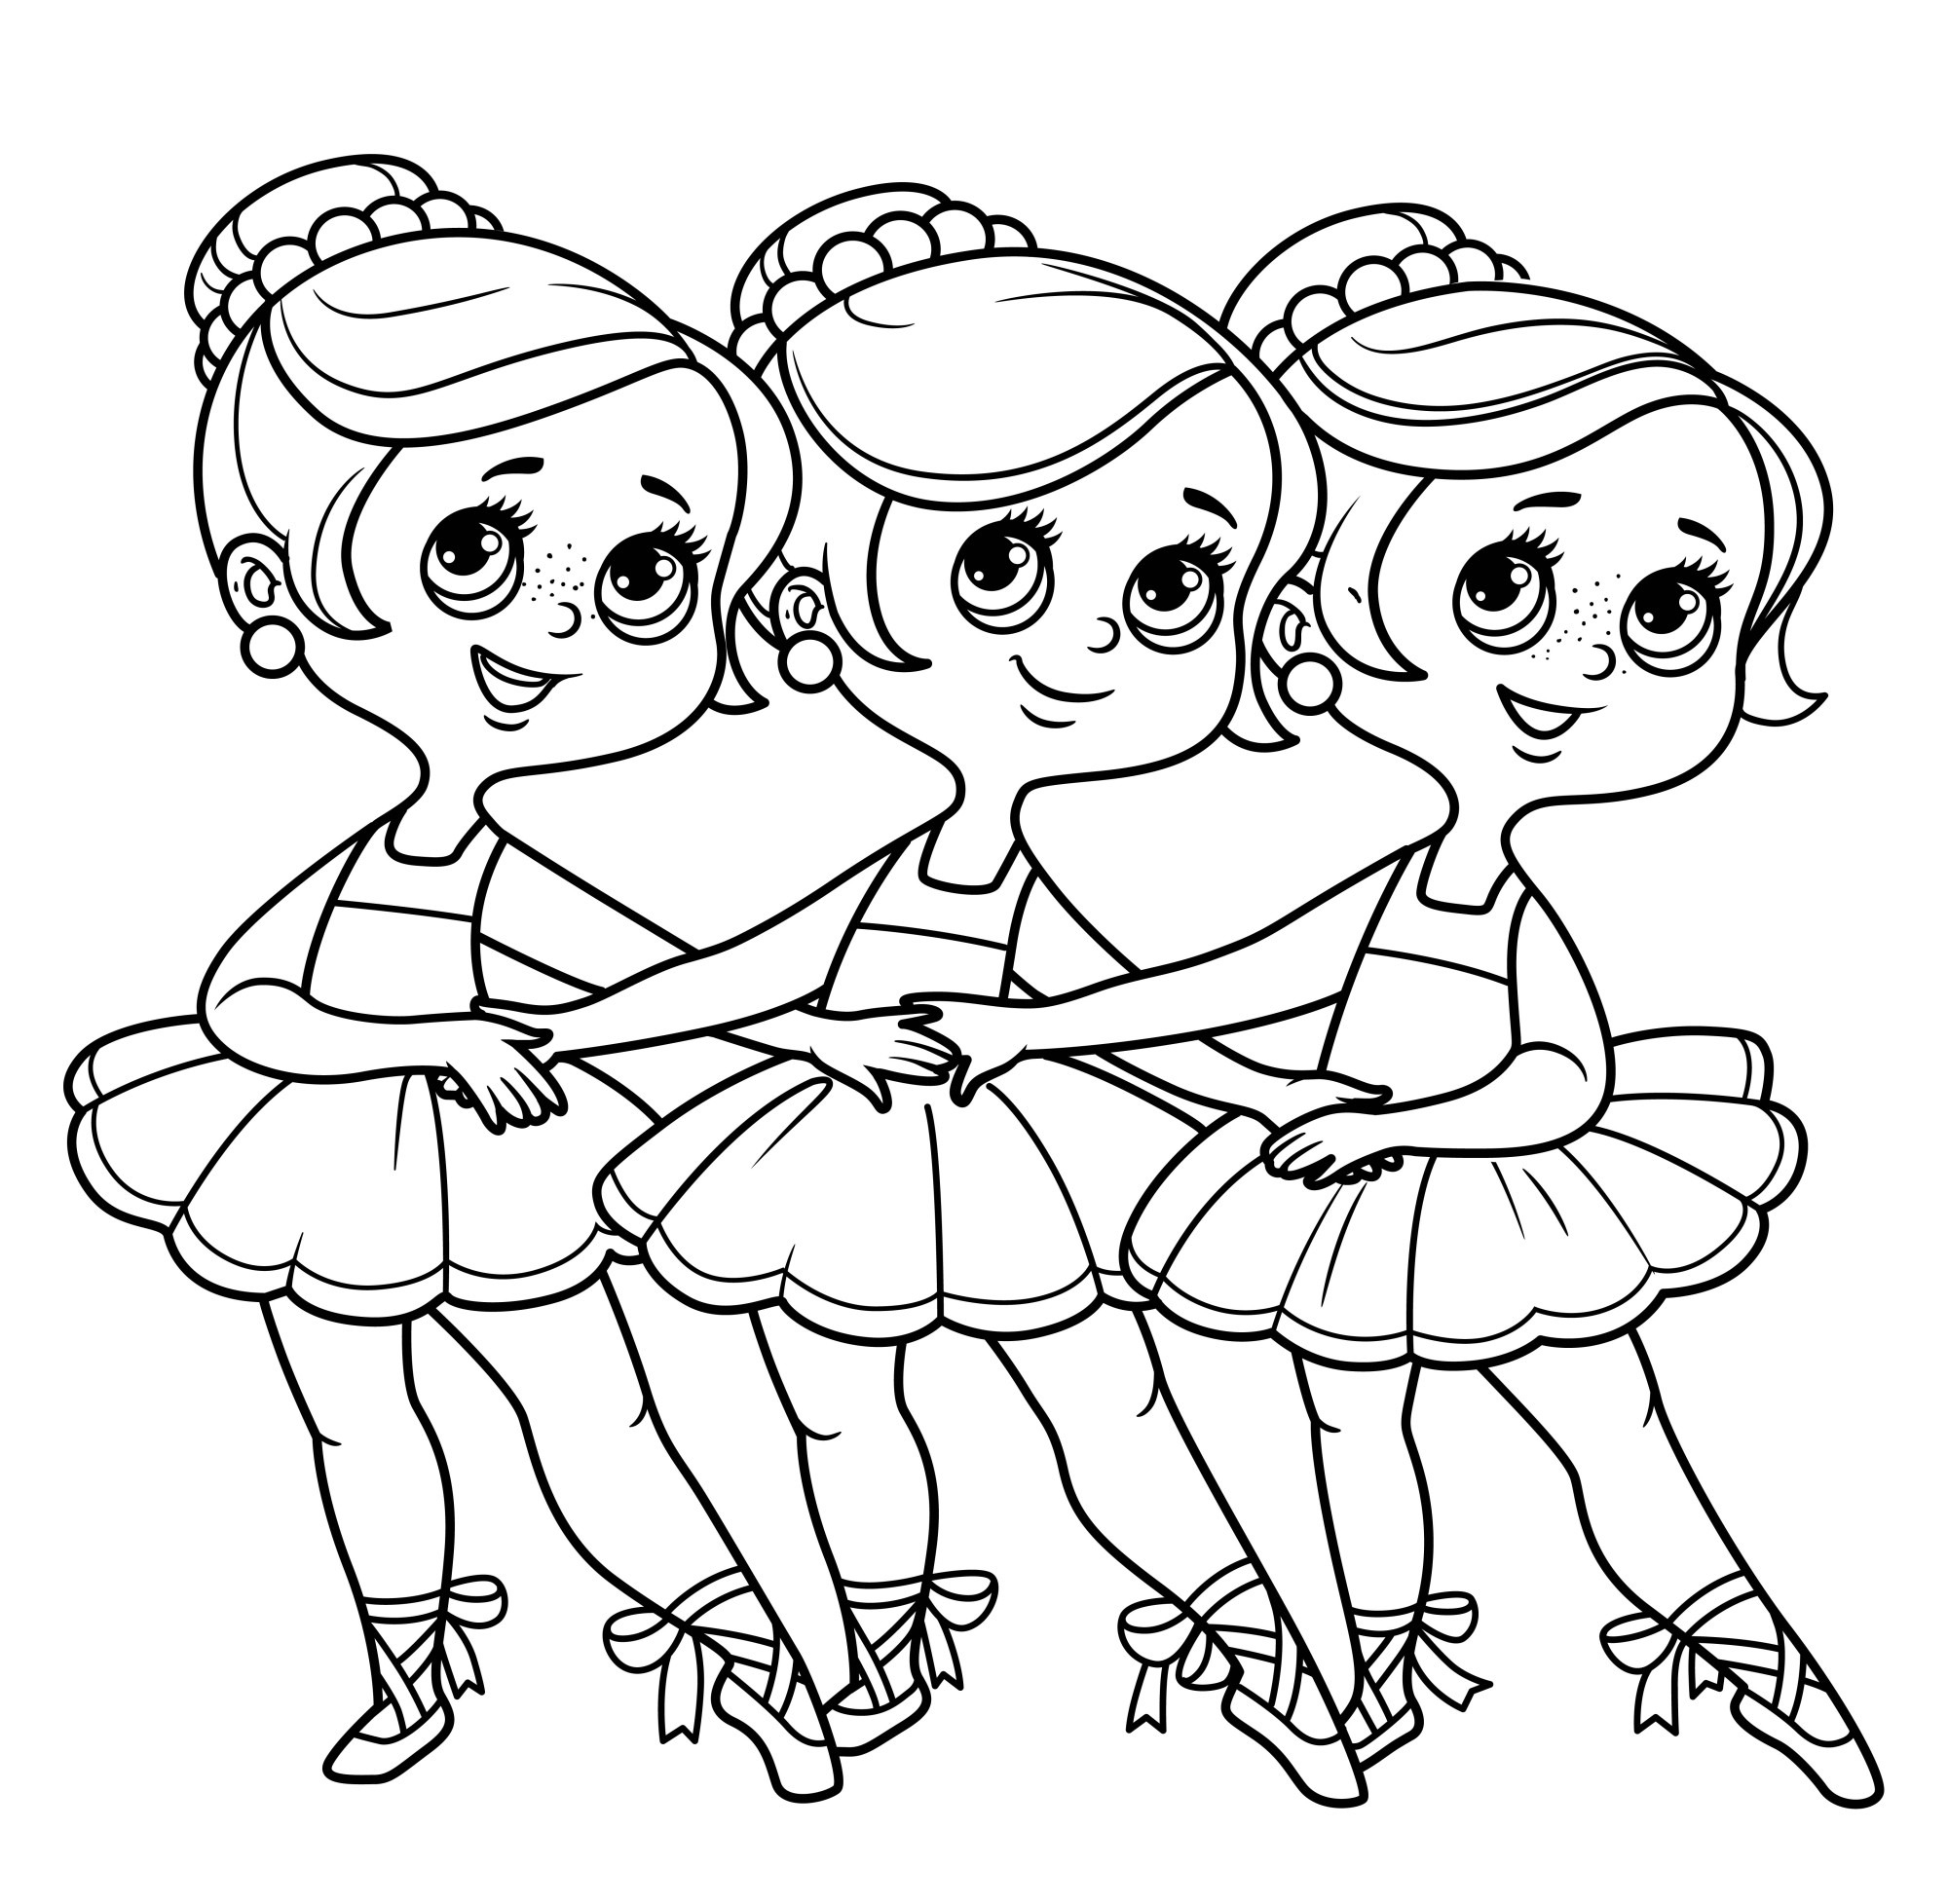 Раскраска для детей: куклы танцующих балерин